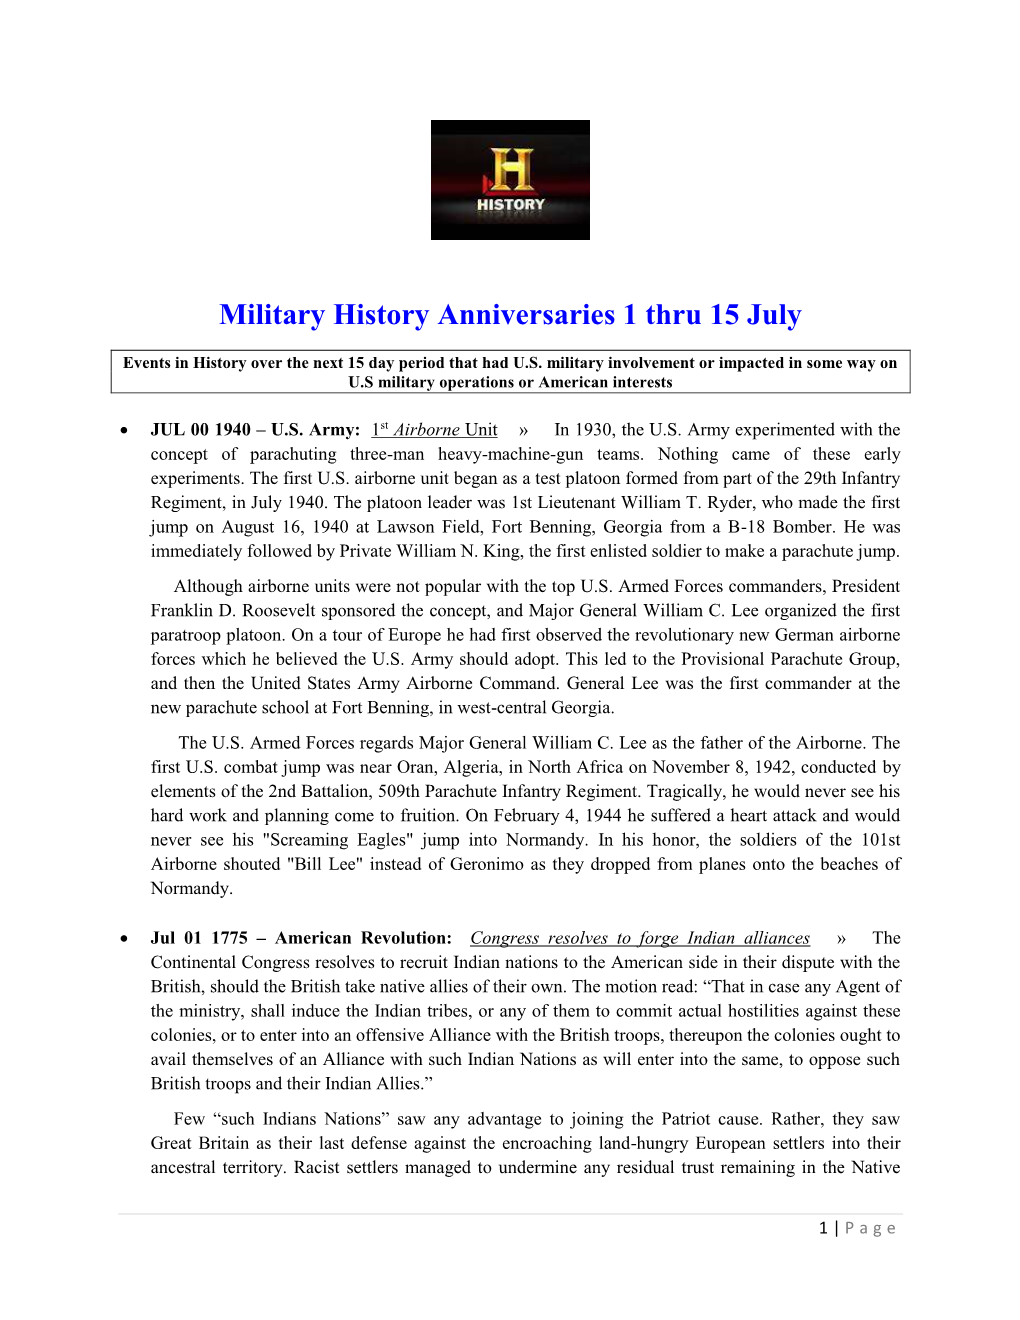 Military History Anniversaries 1 Thru 15 July